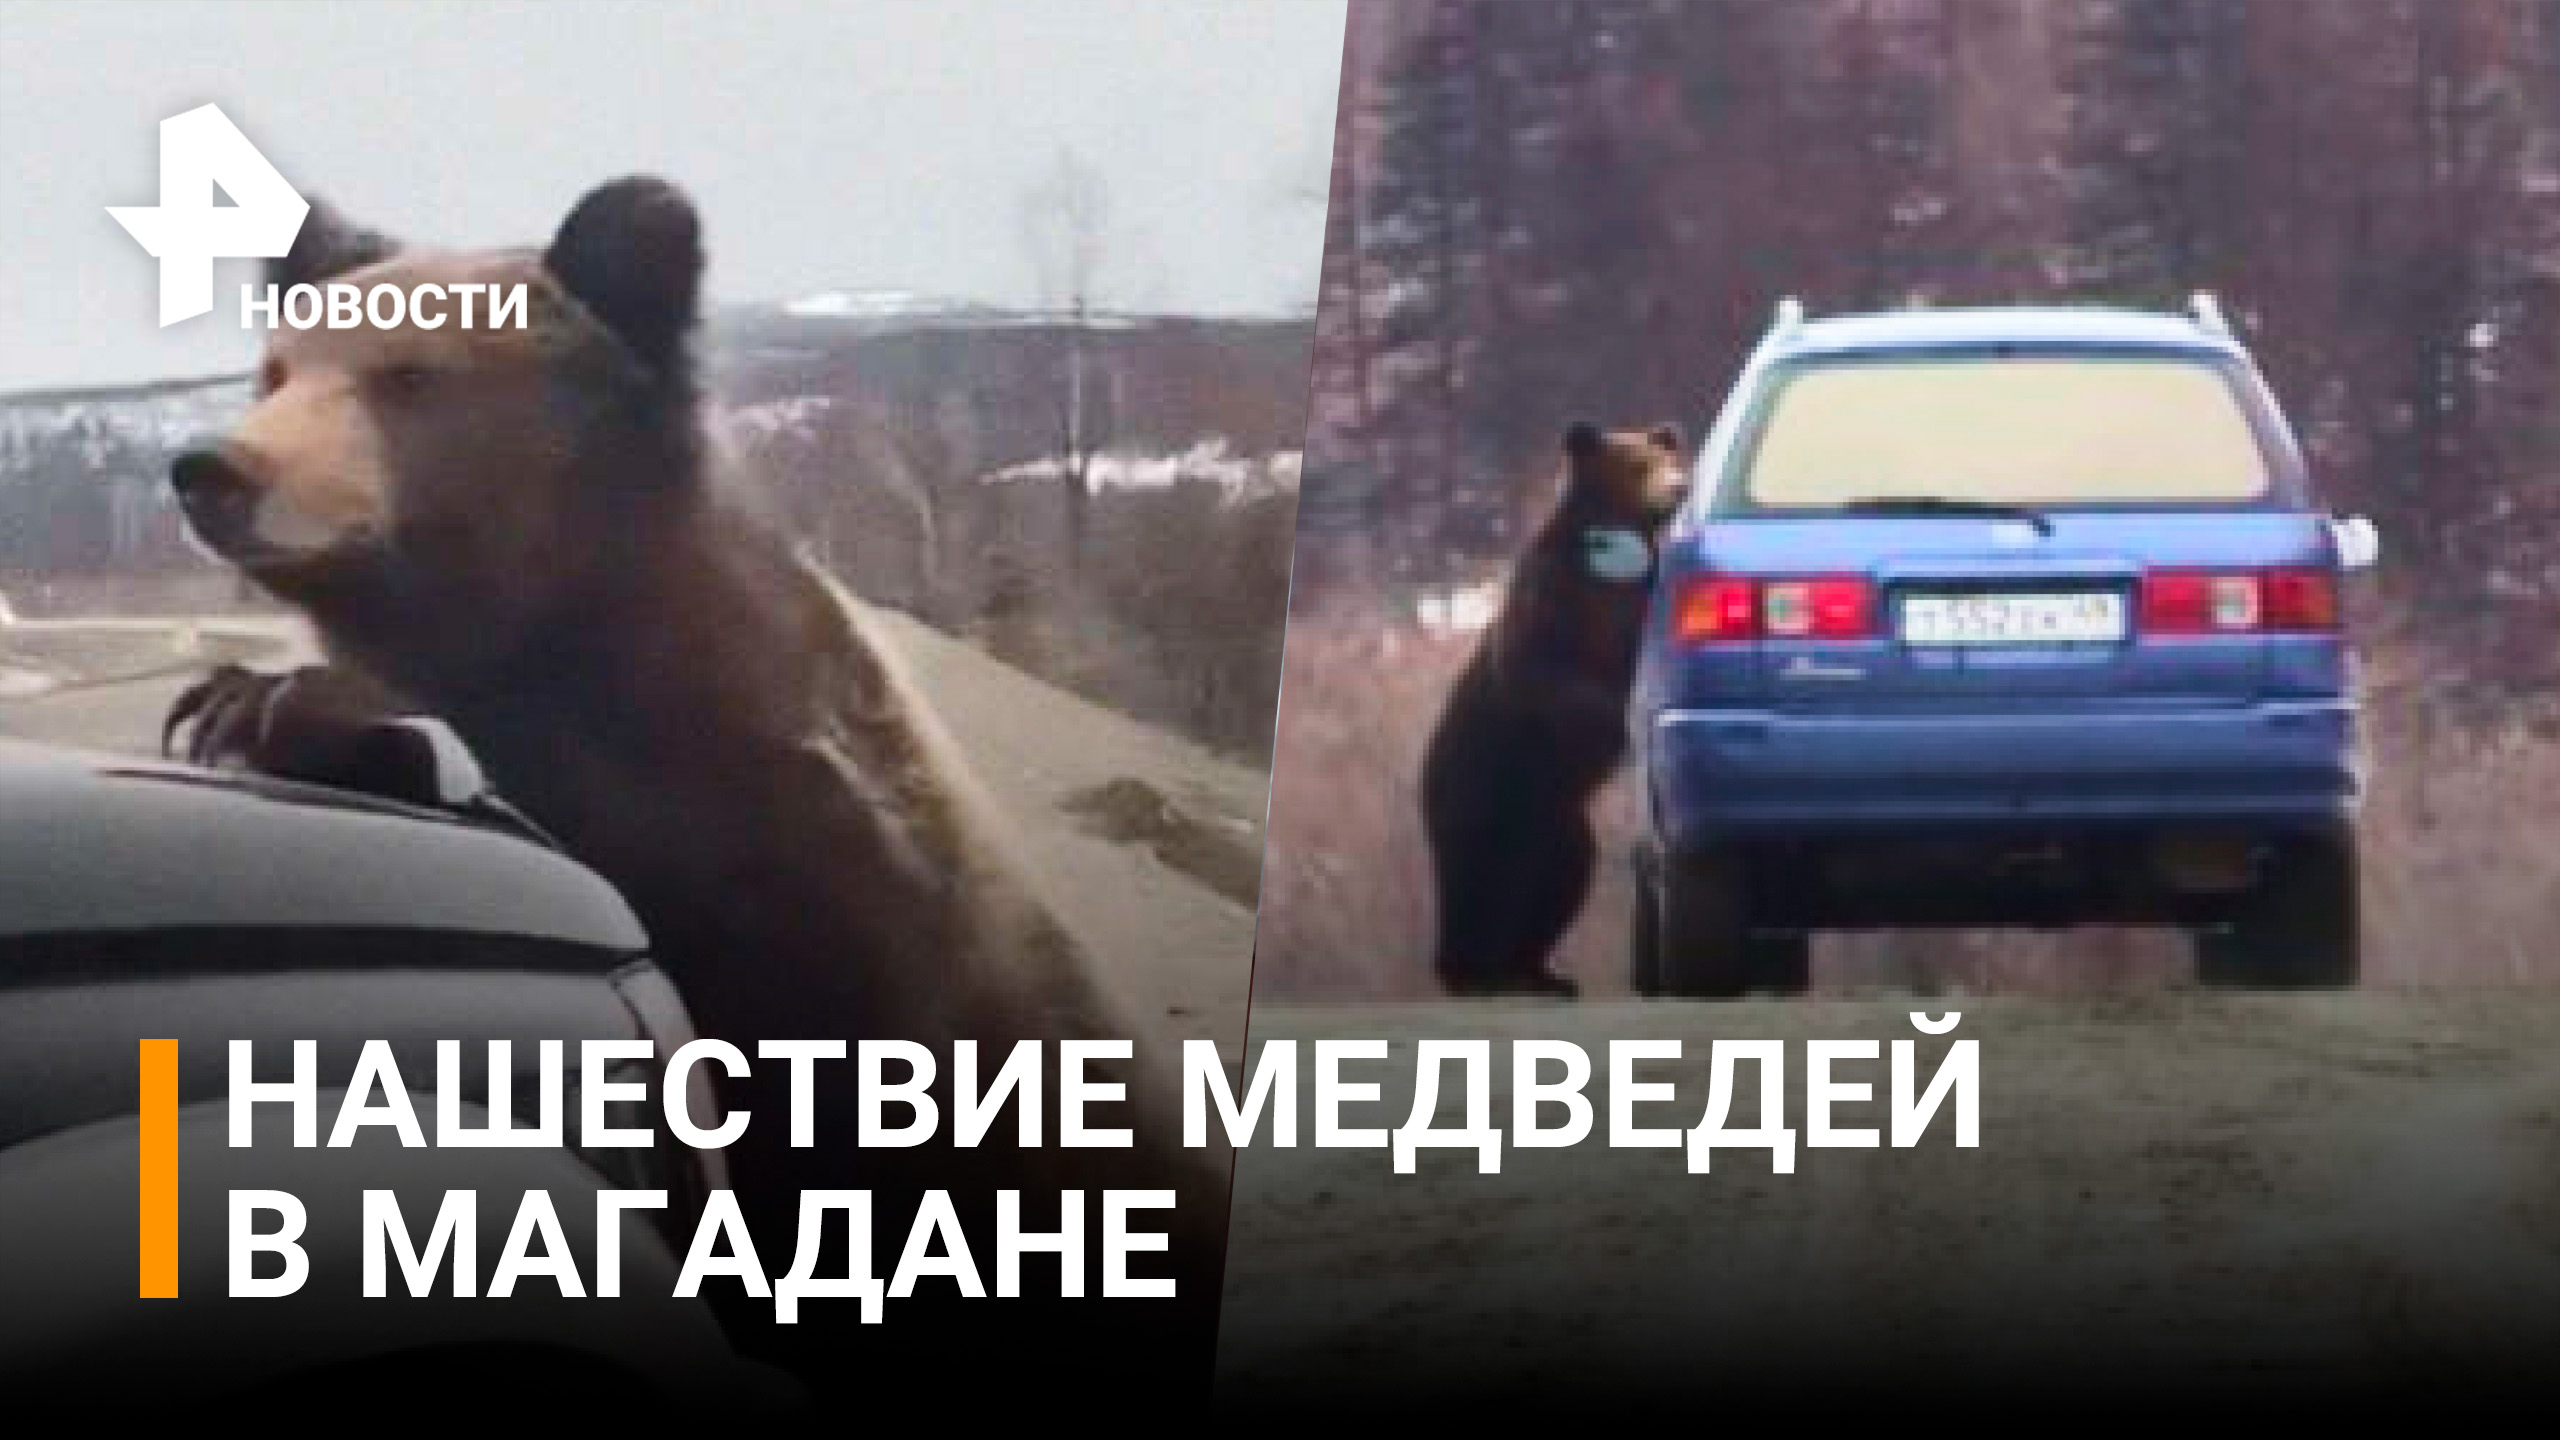 Медведи едят машины в Магаданской области / РЕН Новости